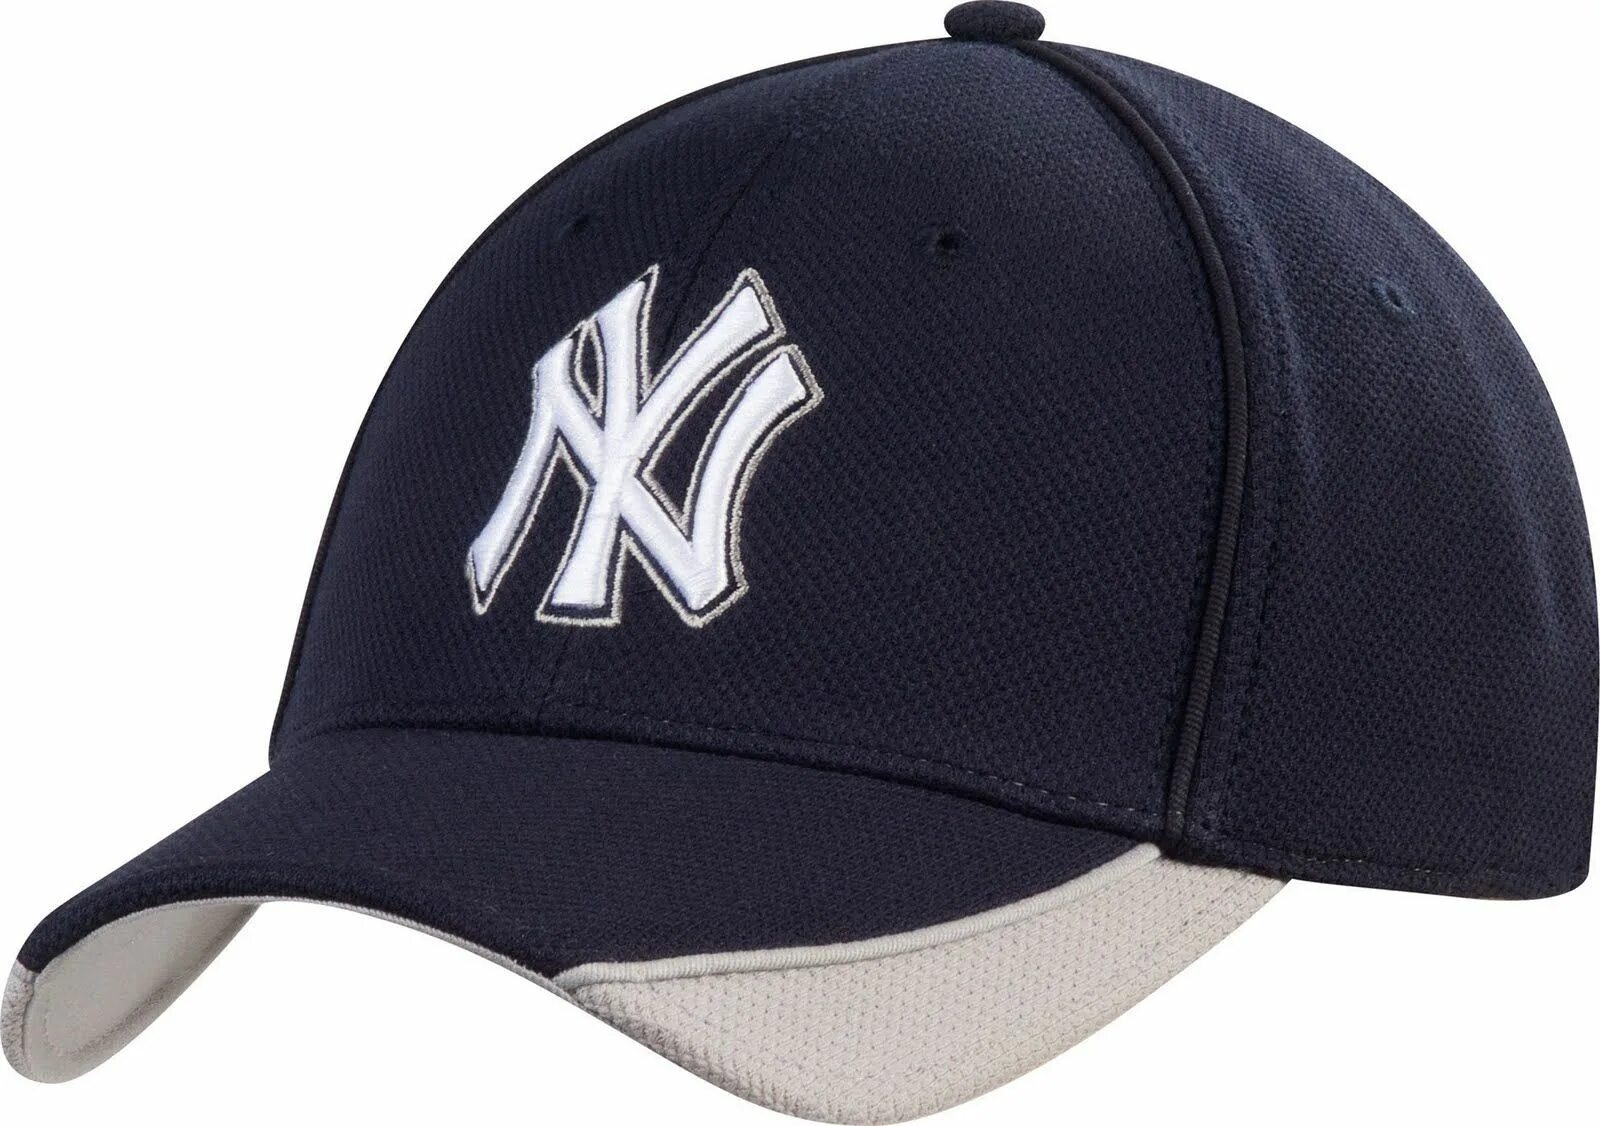 Бейсболка Нью Йорк Янкис. Бейсболка New era New York. Бейсболка Wrangler w0u5u5114 logo cap. Бейсболка KELME cap k901-1-400.